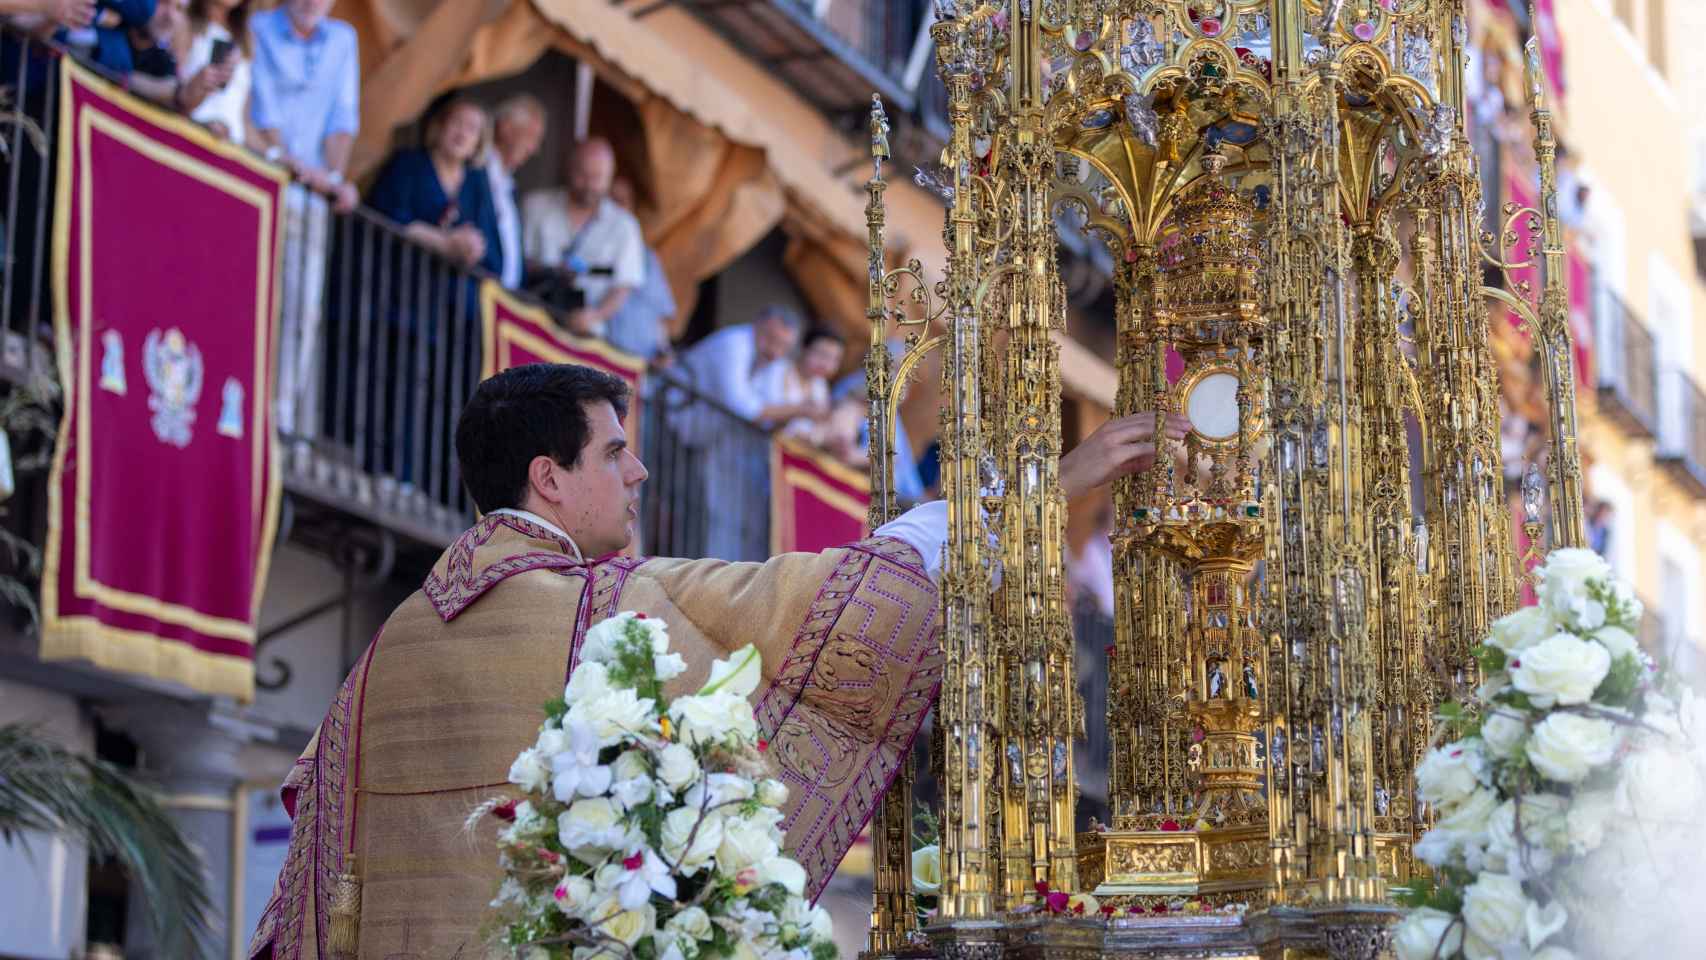 Toledo luce imponente durante la celebración del Corpus: todas las fotos de la procesión